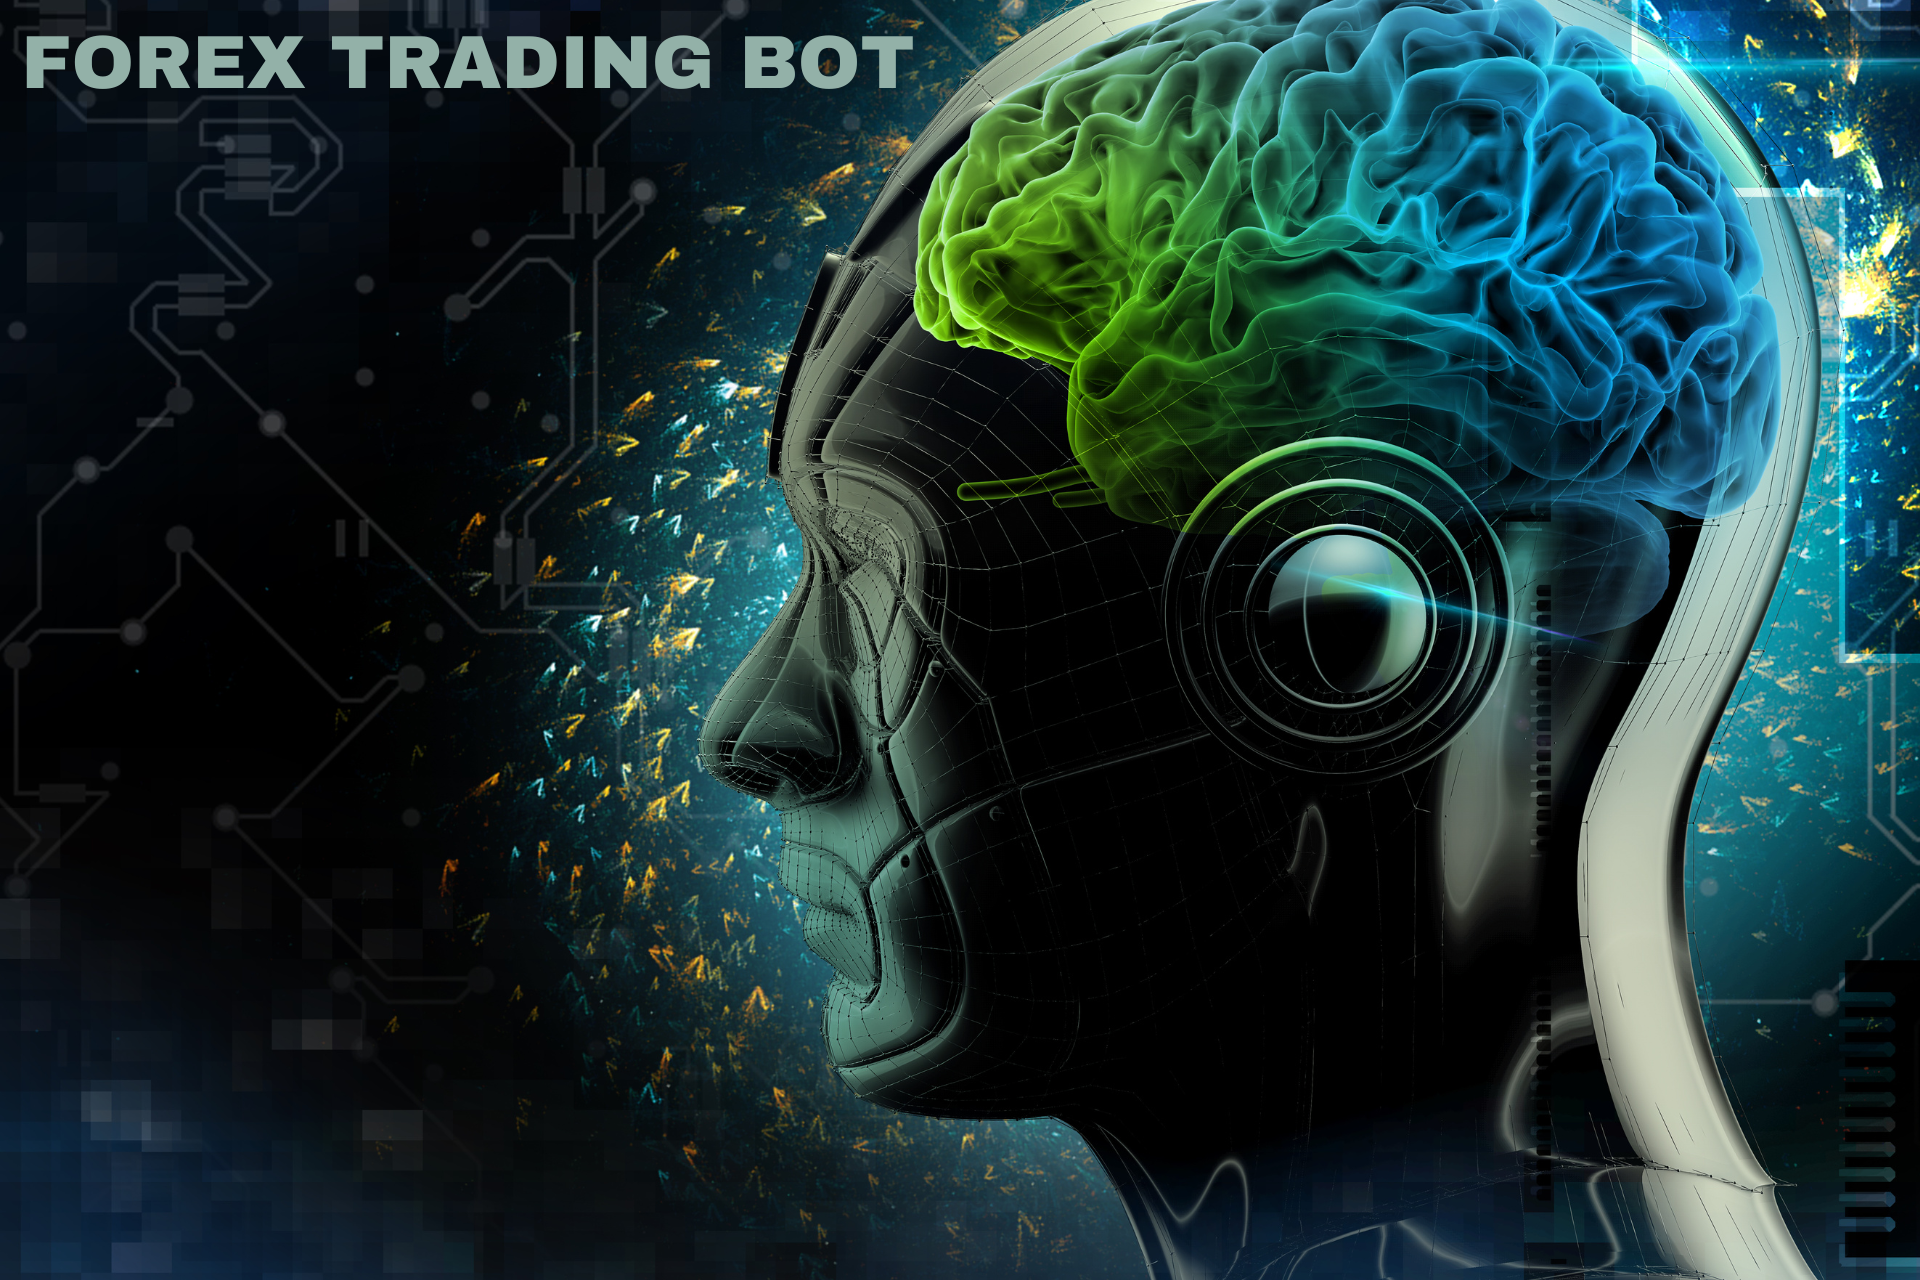 Forex Trading bot, Forex, trading, Trading Bots, Forex trading, Automation, Automated trading